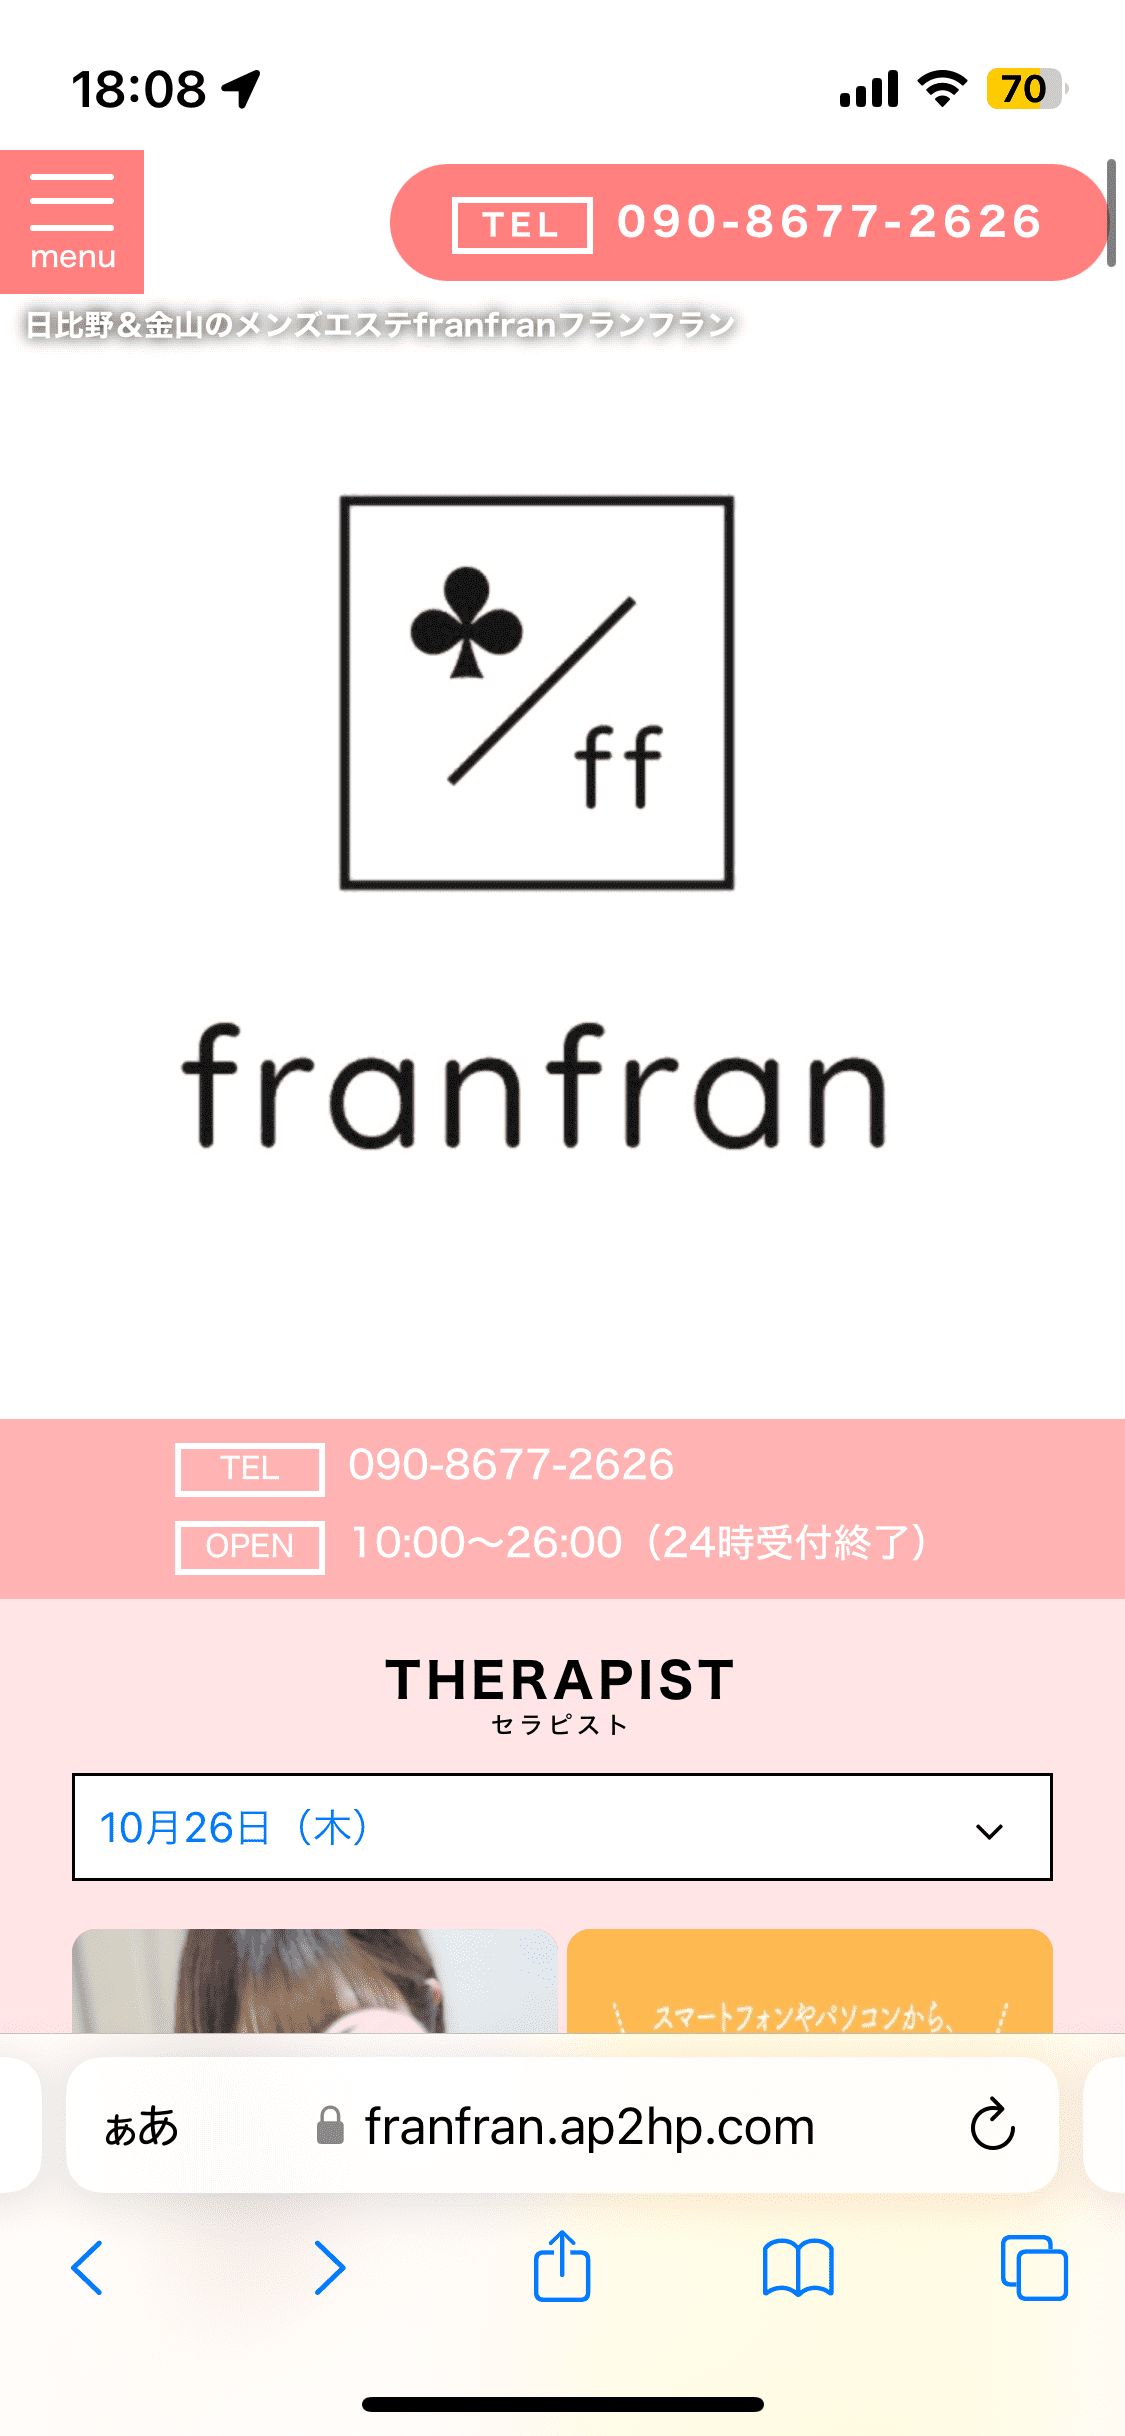 『フランフラン(franfran)』体験談。